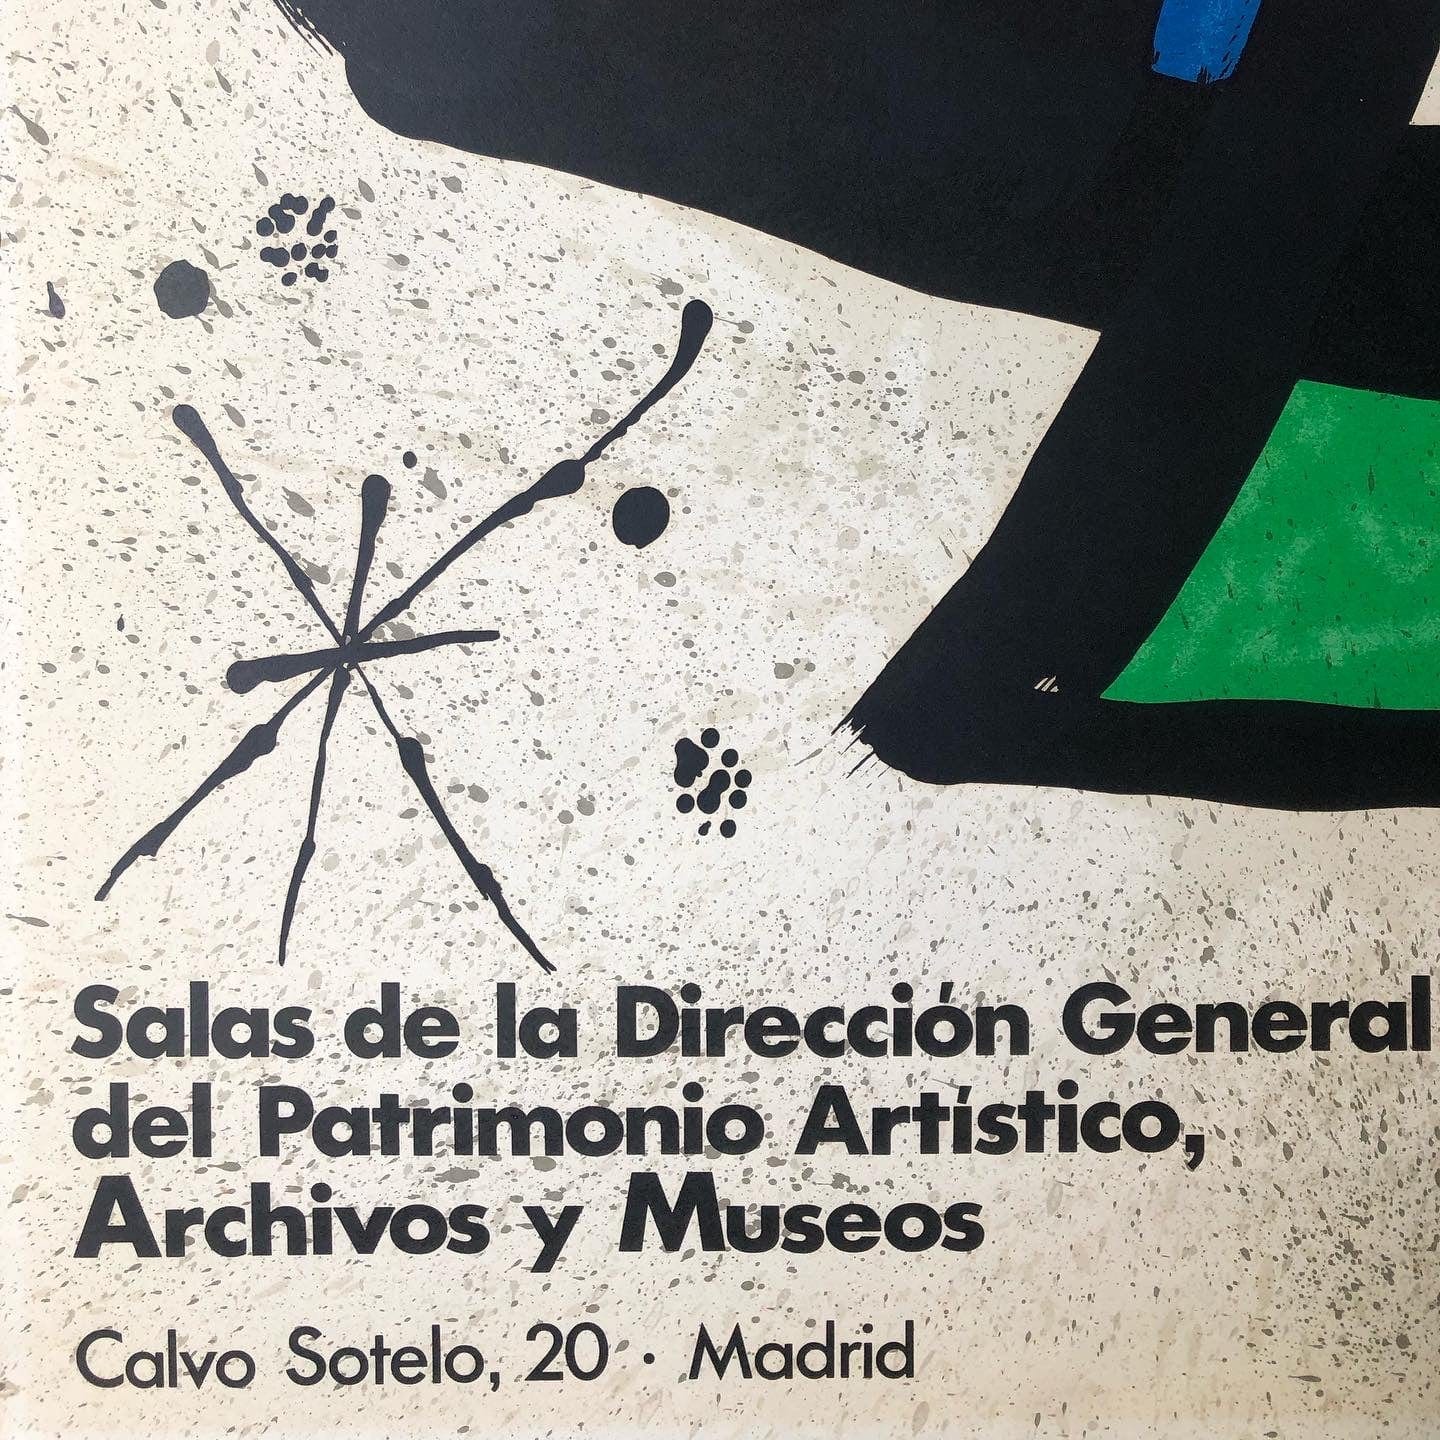 Joan Miró exhibition Poster, 1978 - Fundació Joan Miró